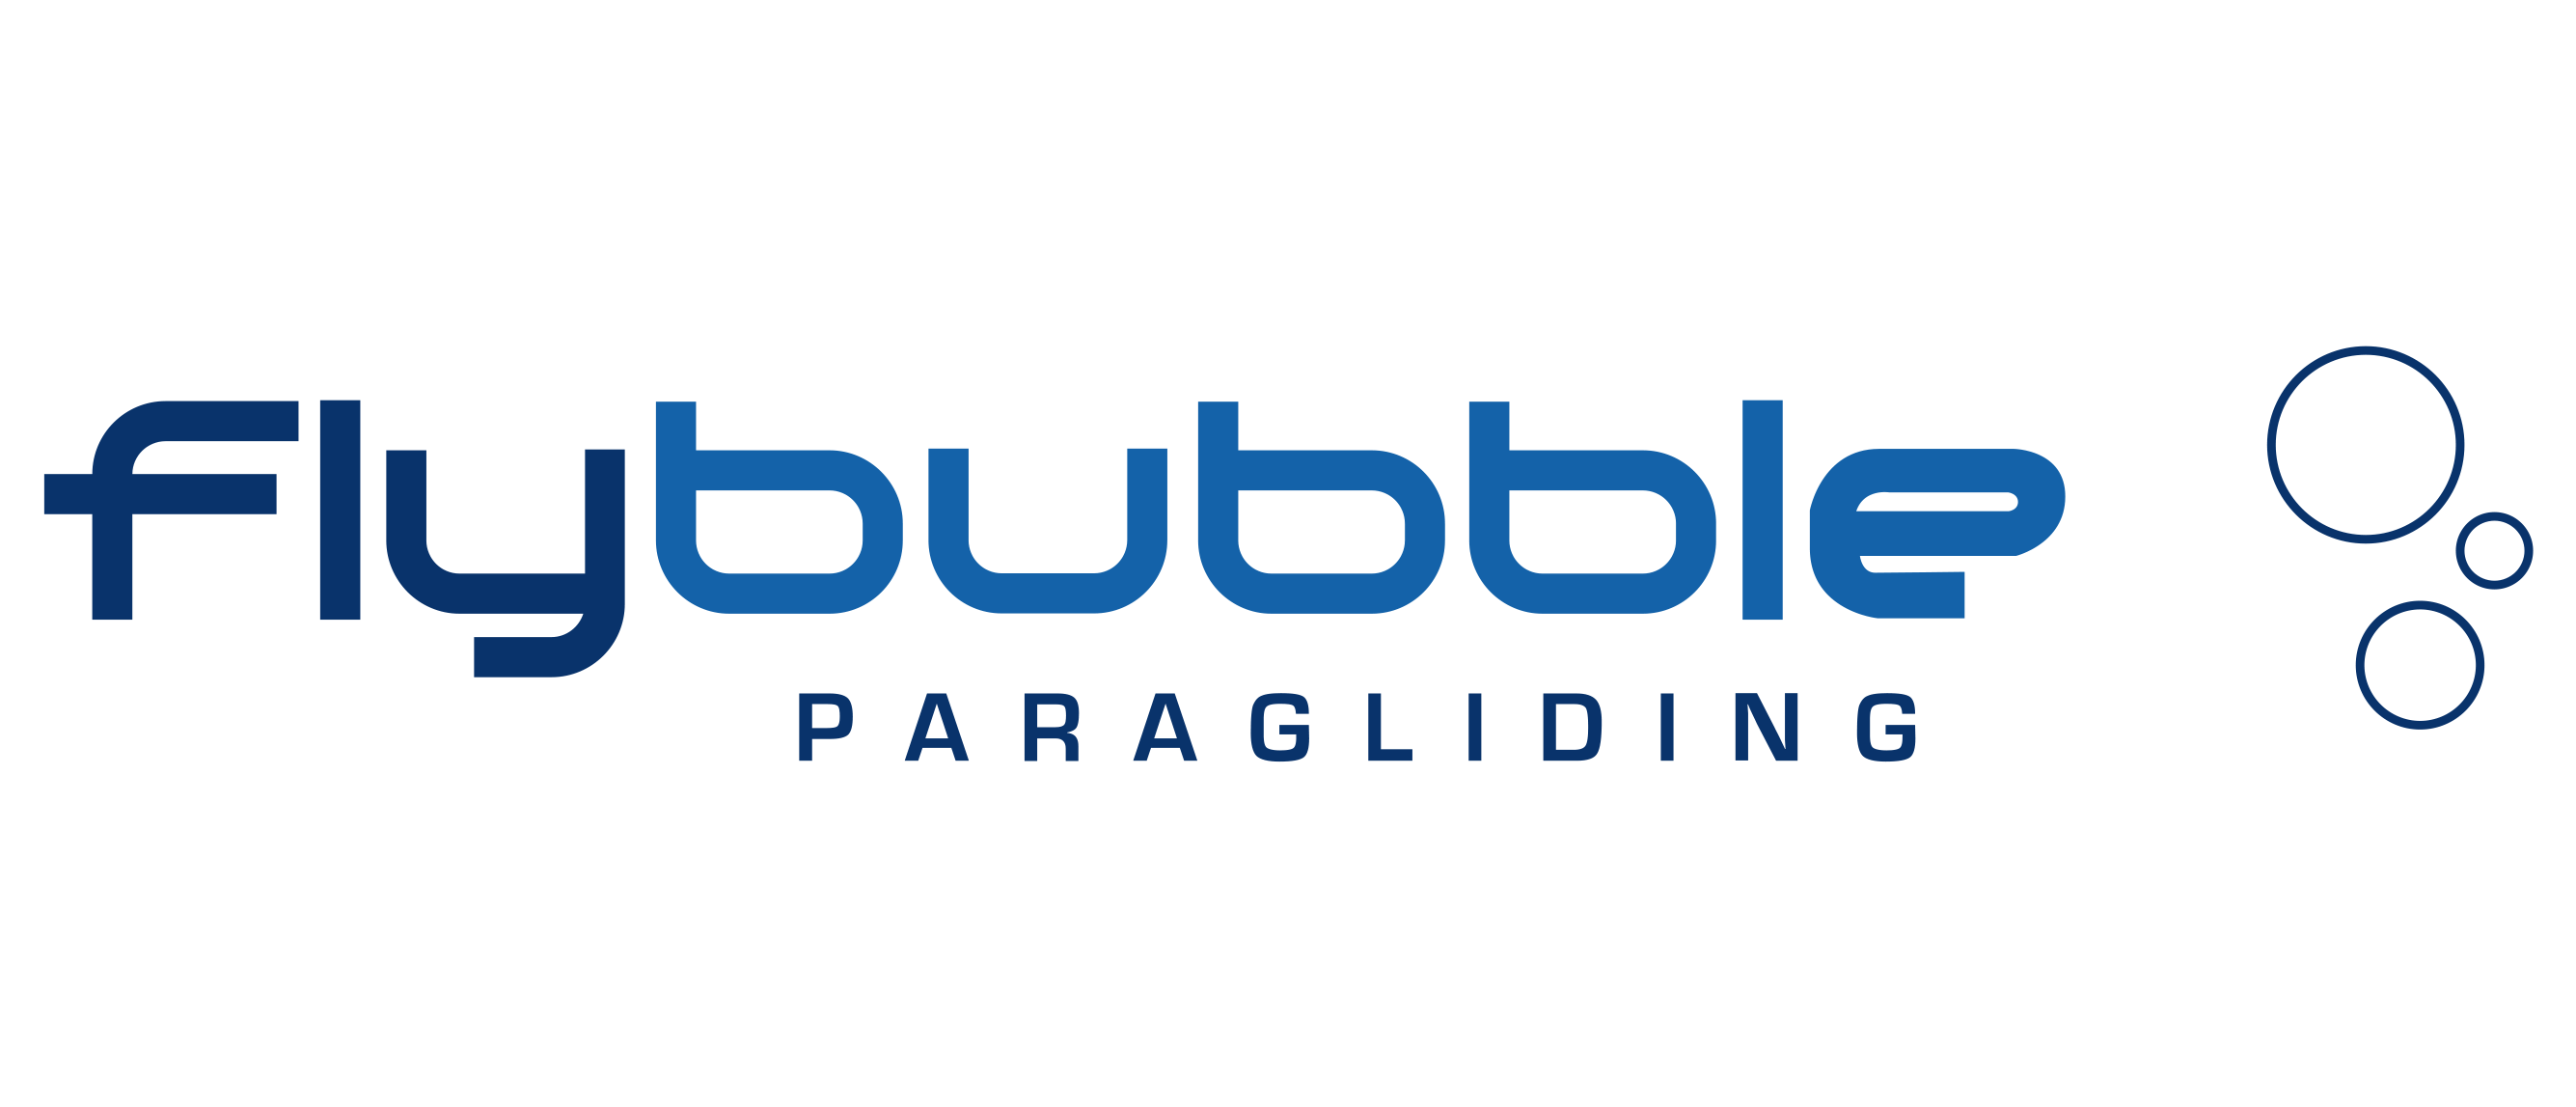 Flybubble